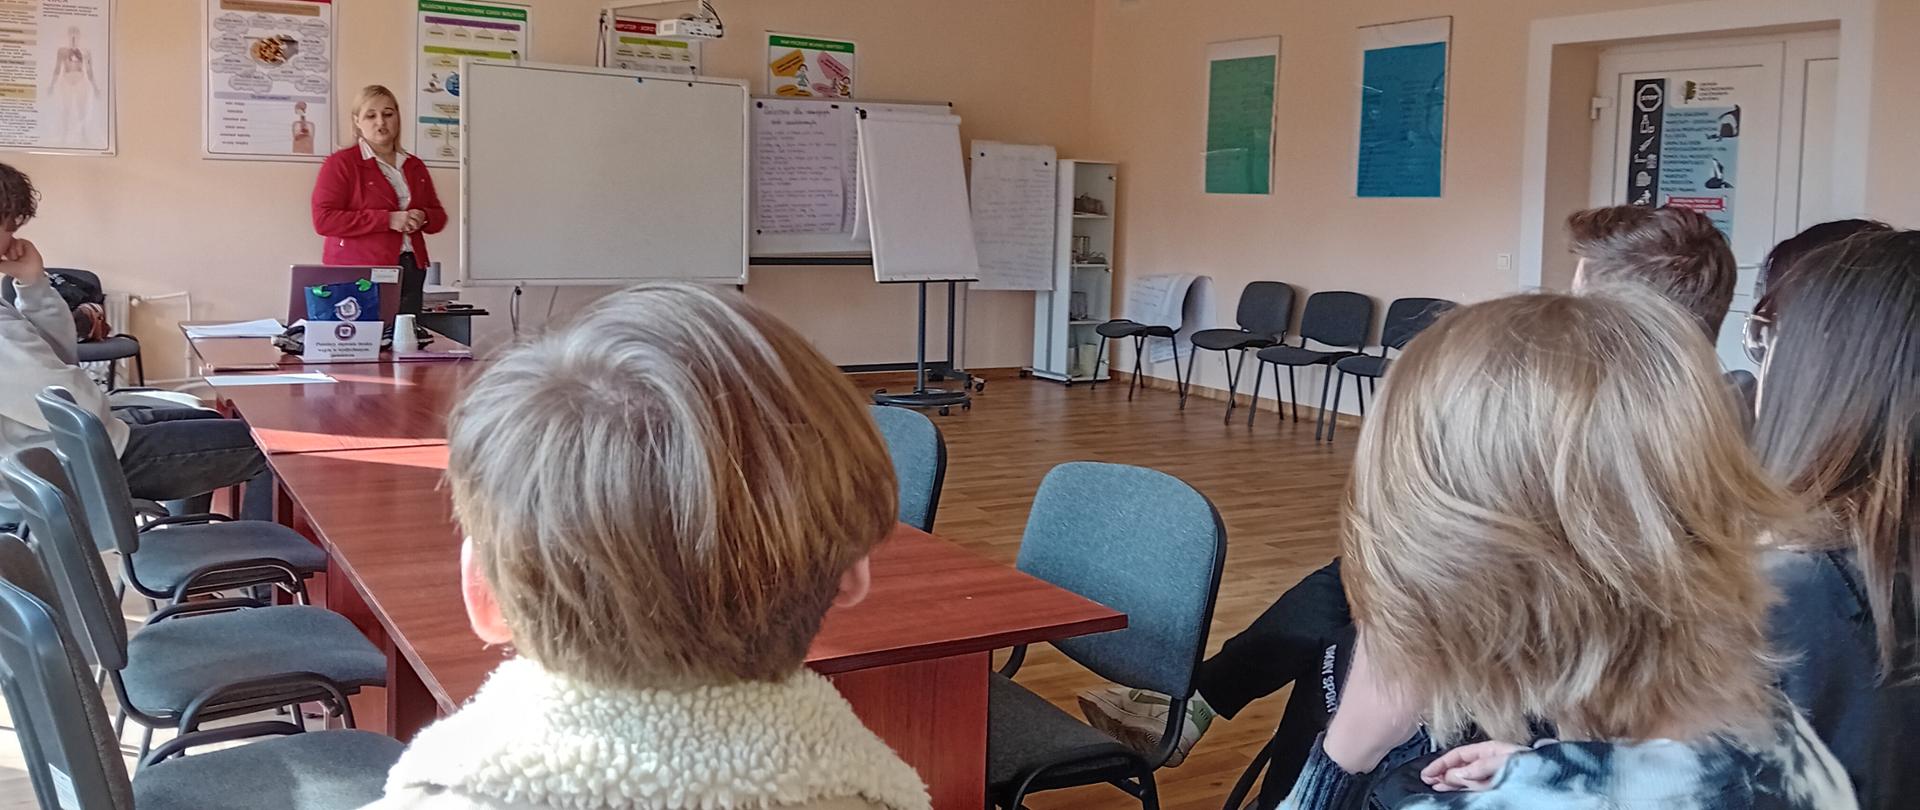 Zajęcia edukacyjne dla uczniów na terenie Centrum Przeciwdziałania Uzależnieniom w Bytomiu w ramach koalicji lokalnej